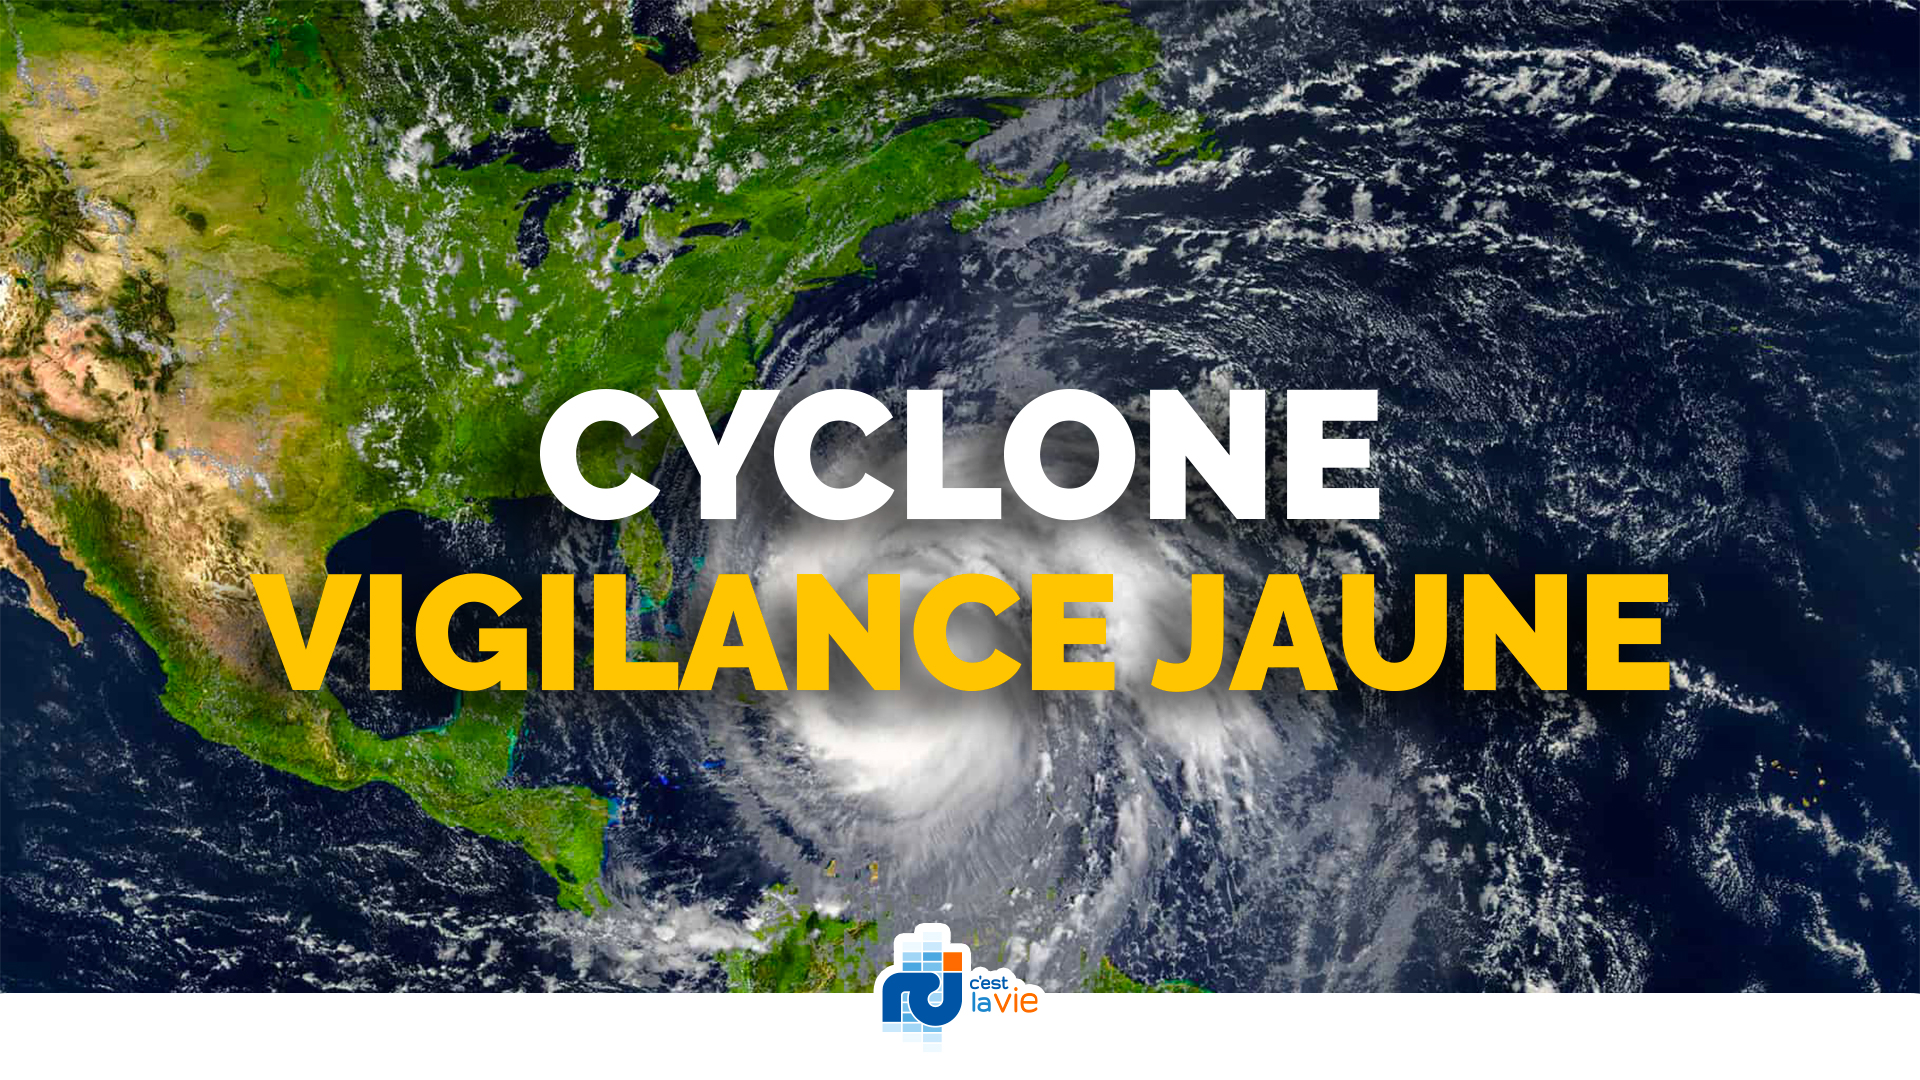     La Martinique placée en vigilance jaune cyclone

